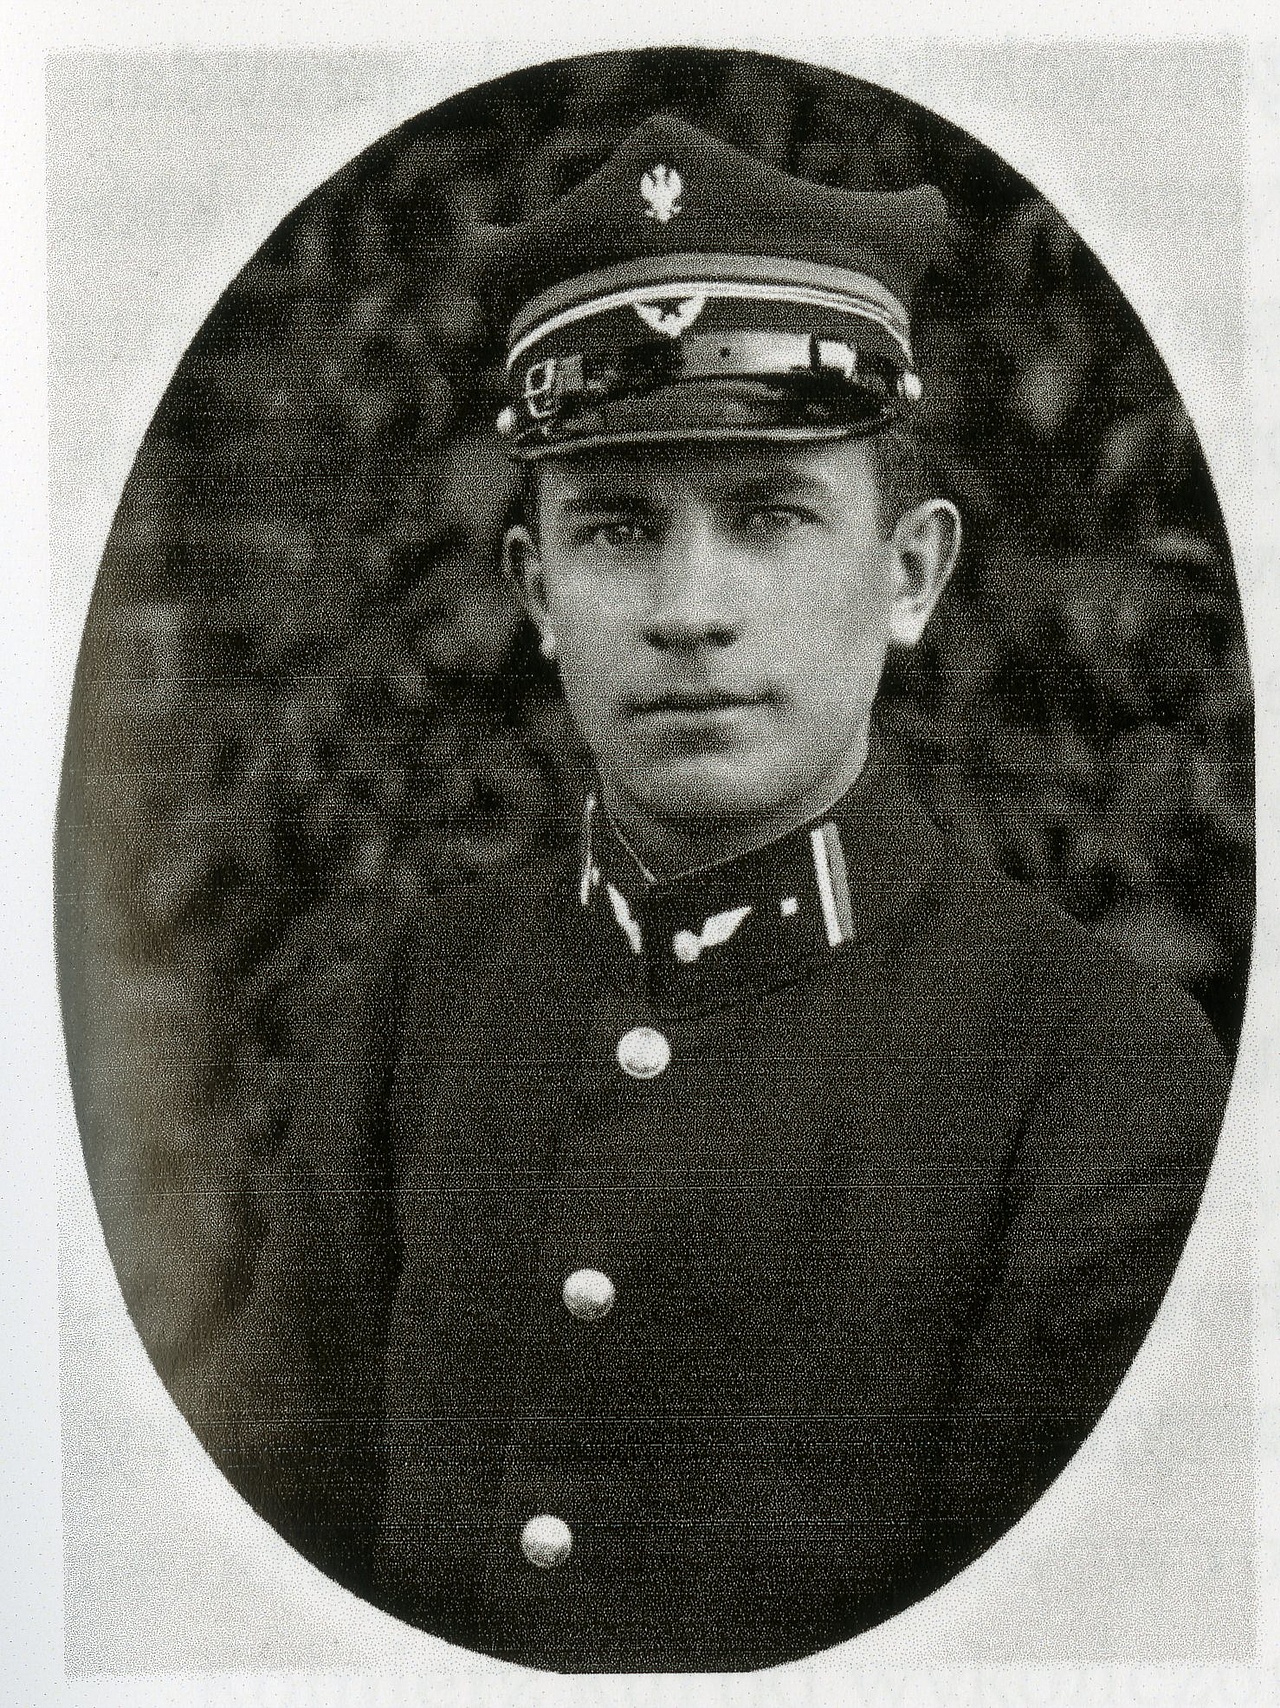  Kolejarz w kurtce według wzoru z 1919 roku, ze sztywnymi patkami na kołnierzu.